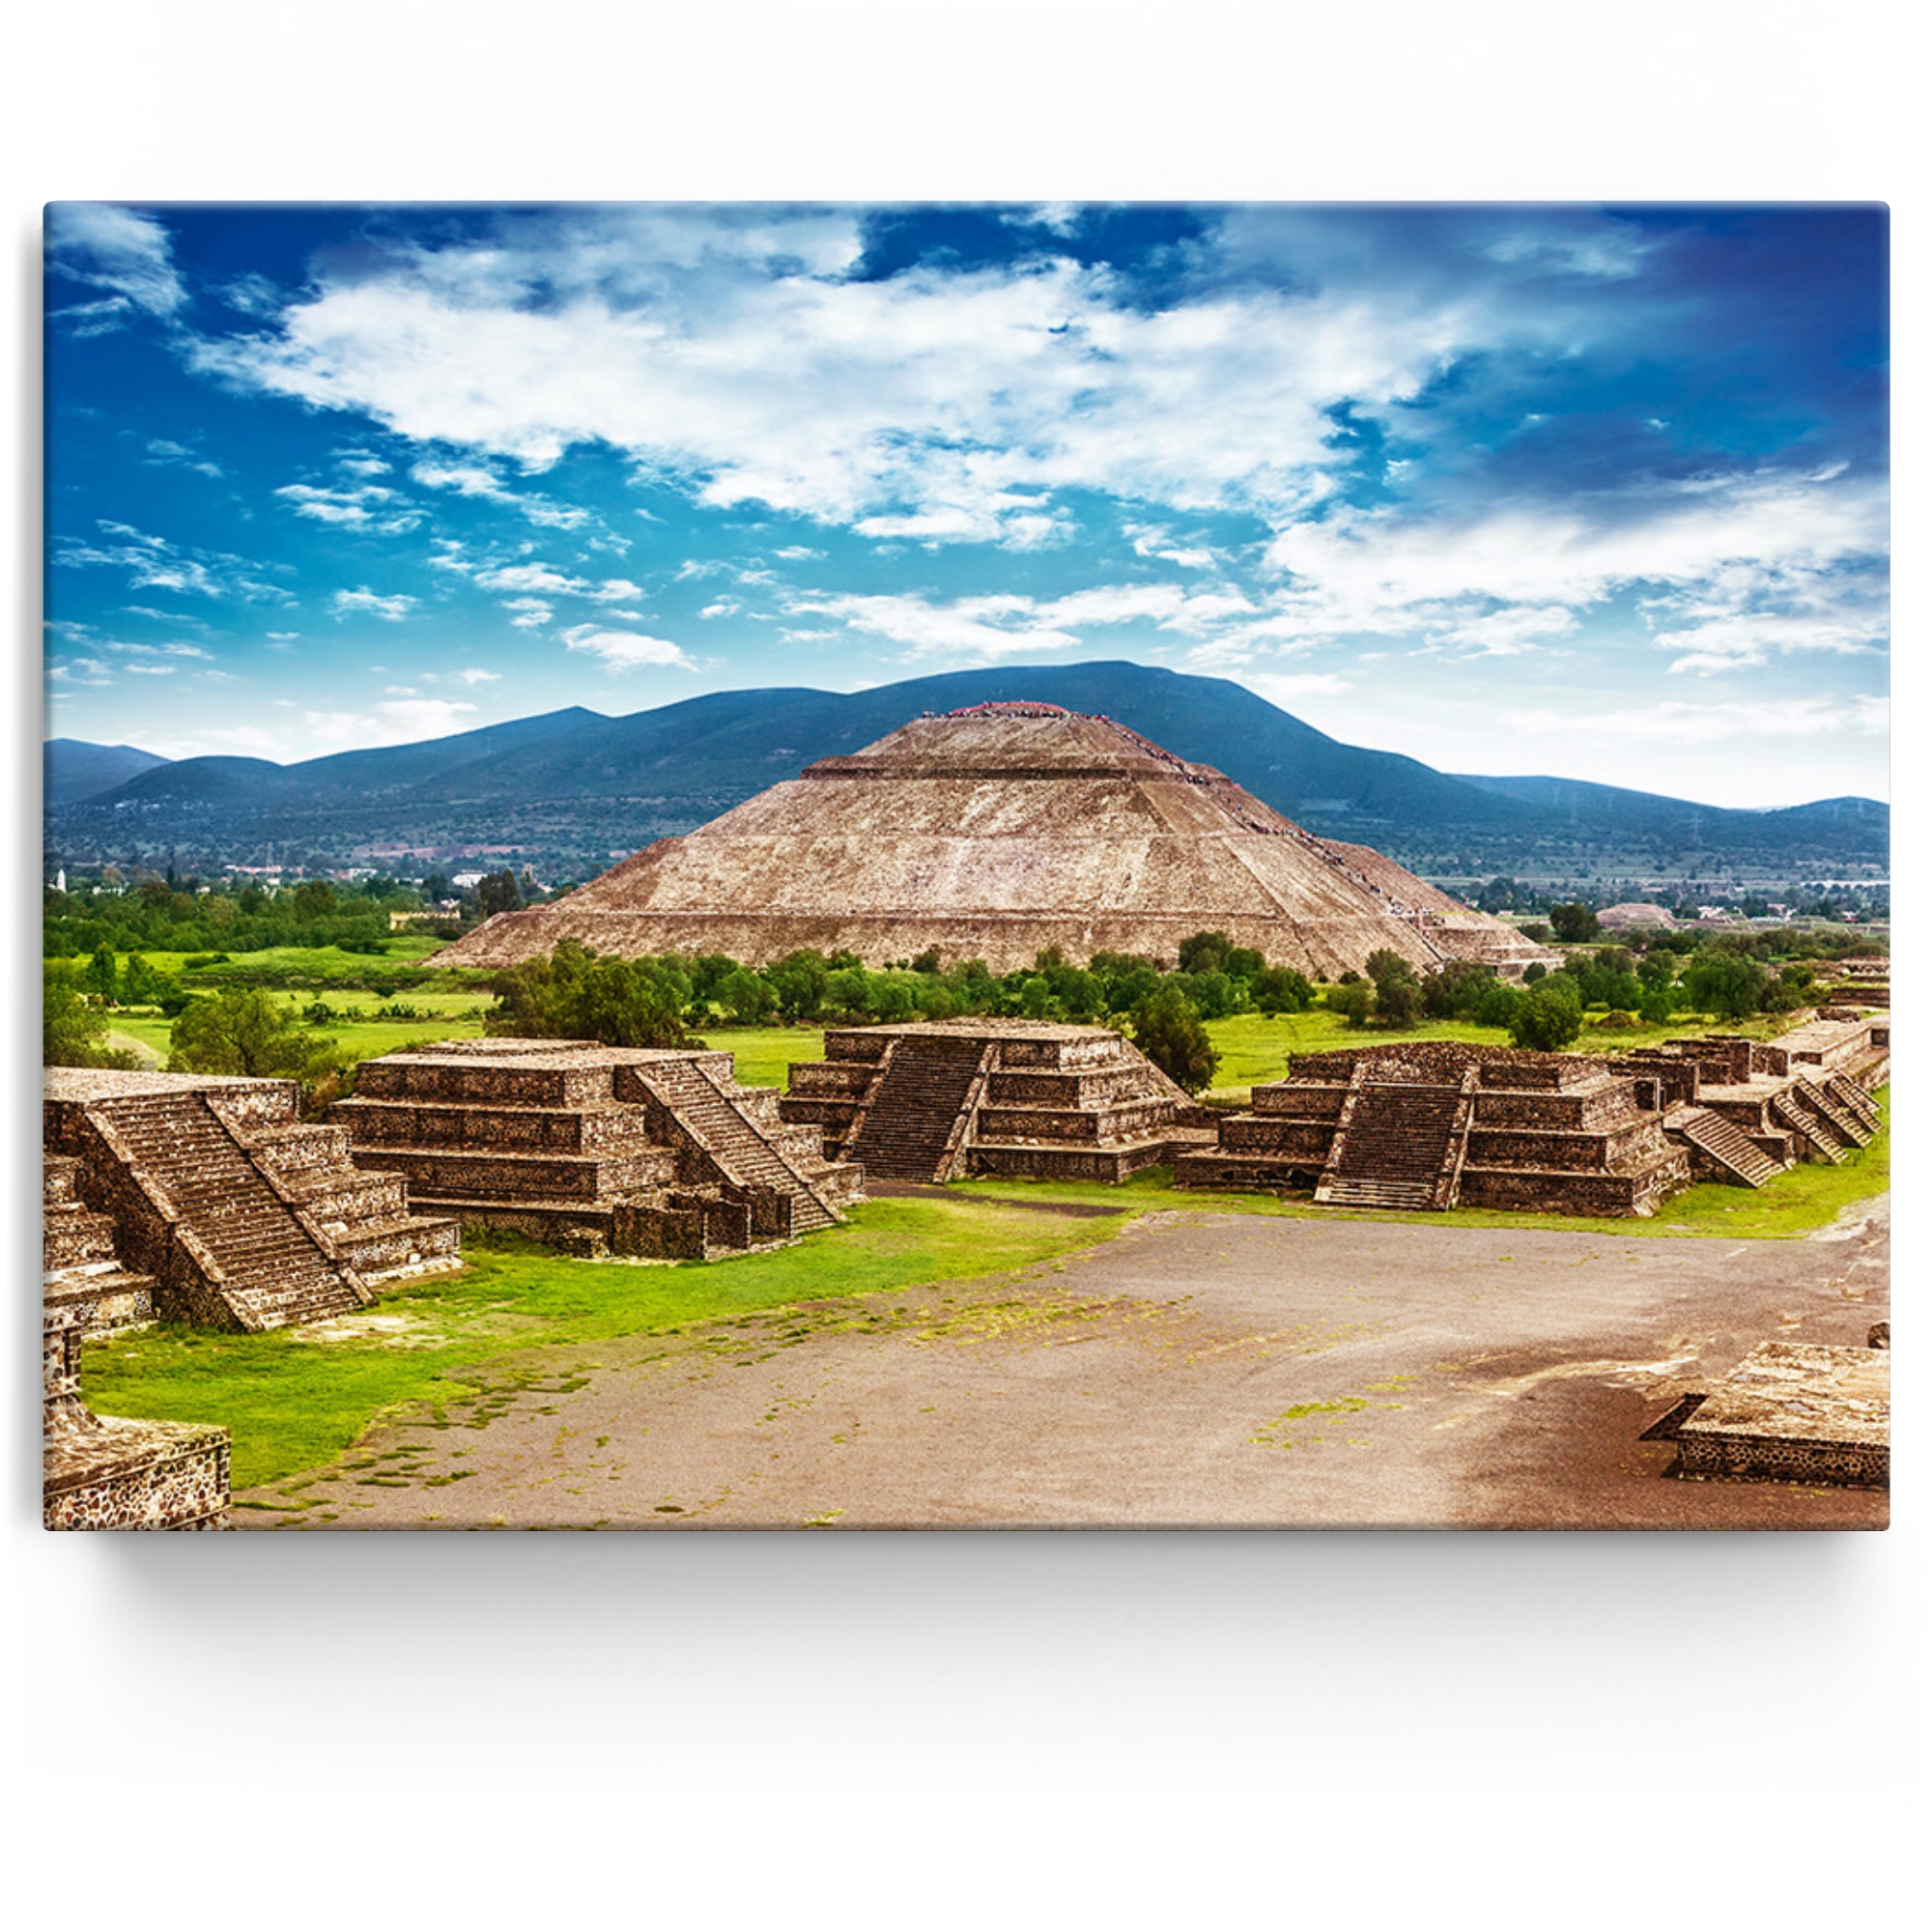 Toile personnalisée Pyramides de Teotihuacán au Mexique